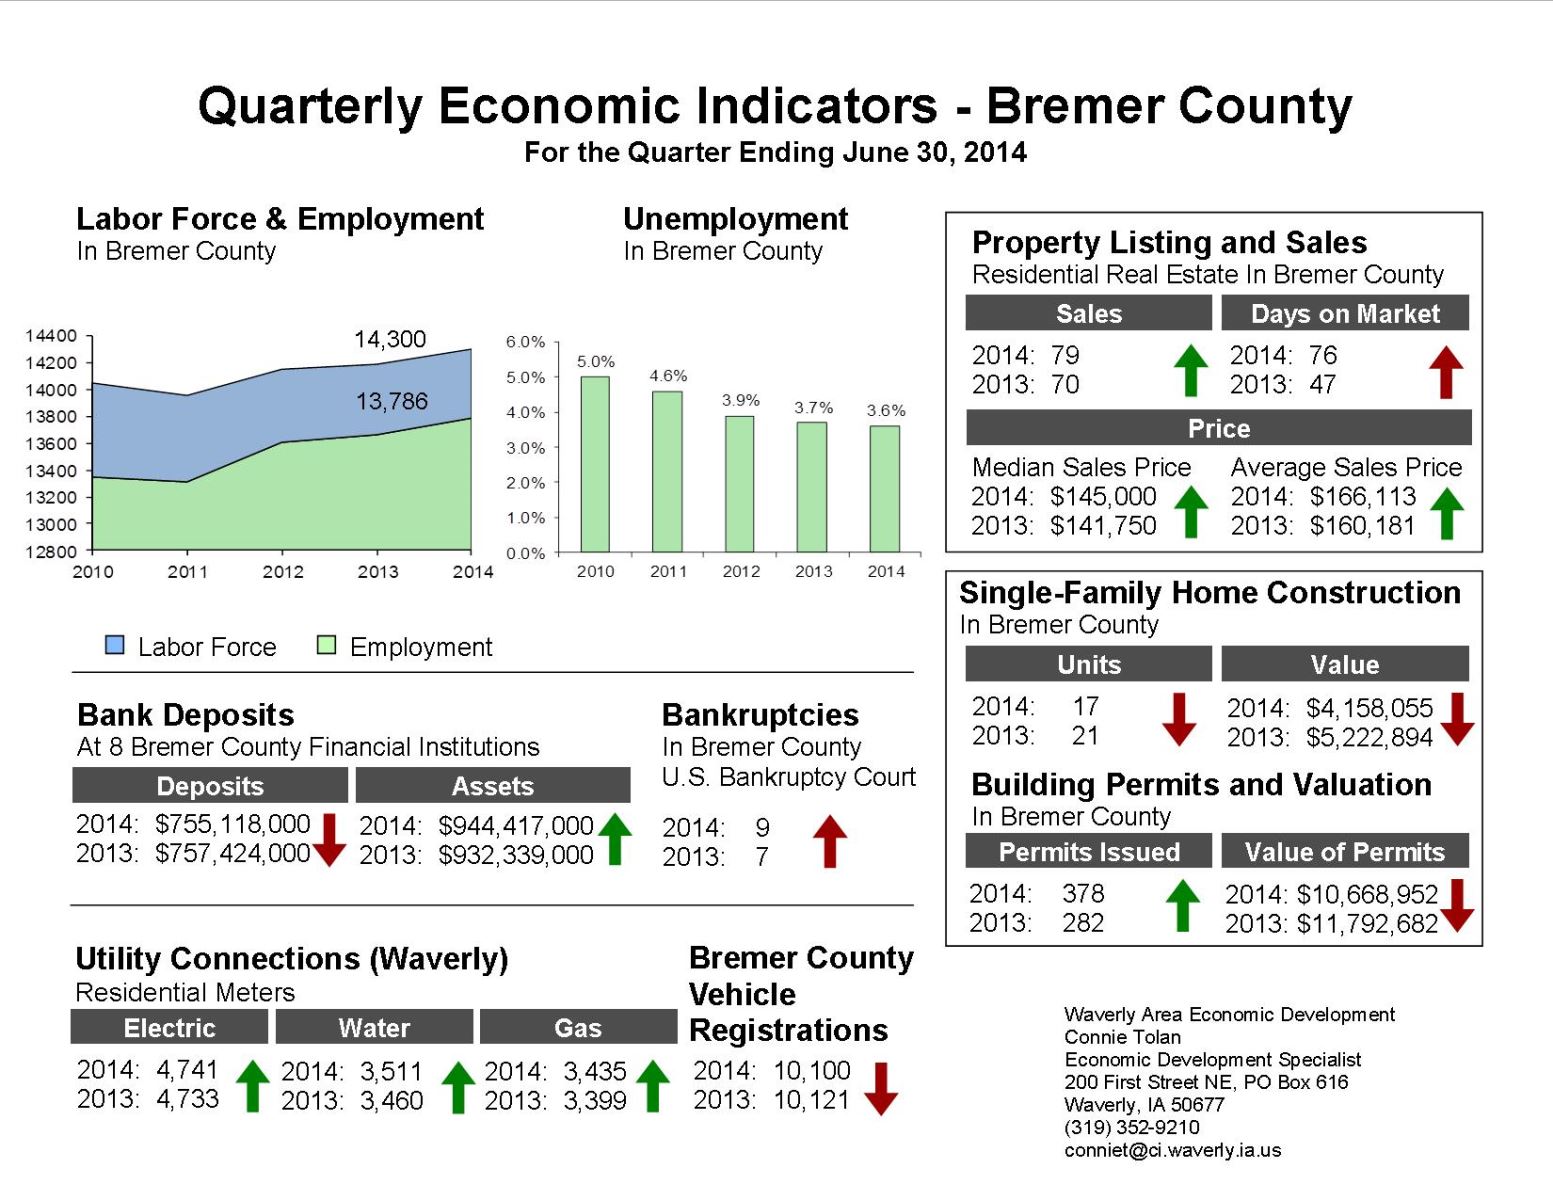 Quarterly Economic Indicators - 2nd Qtr 2014